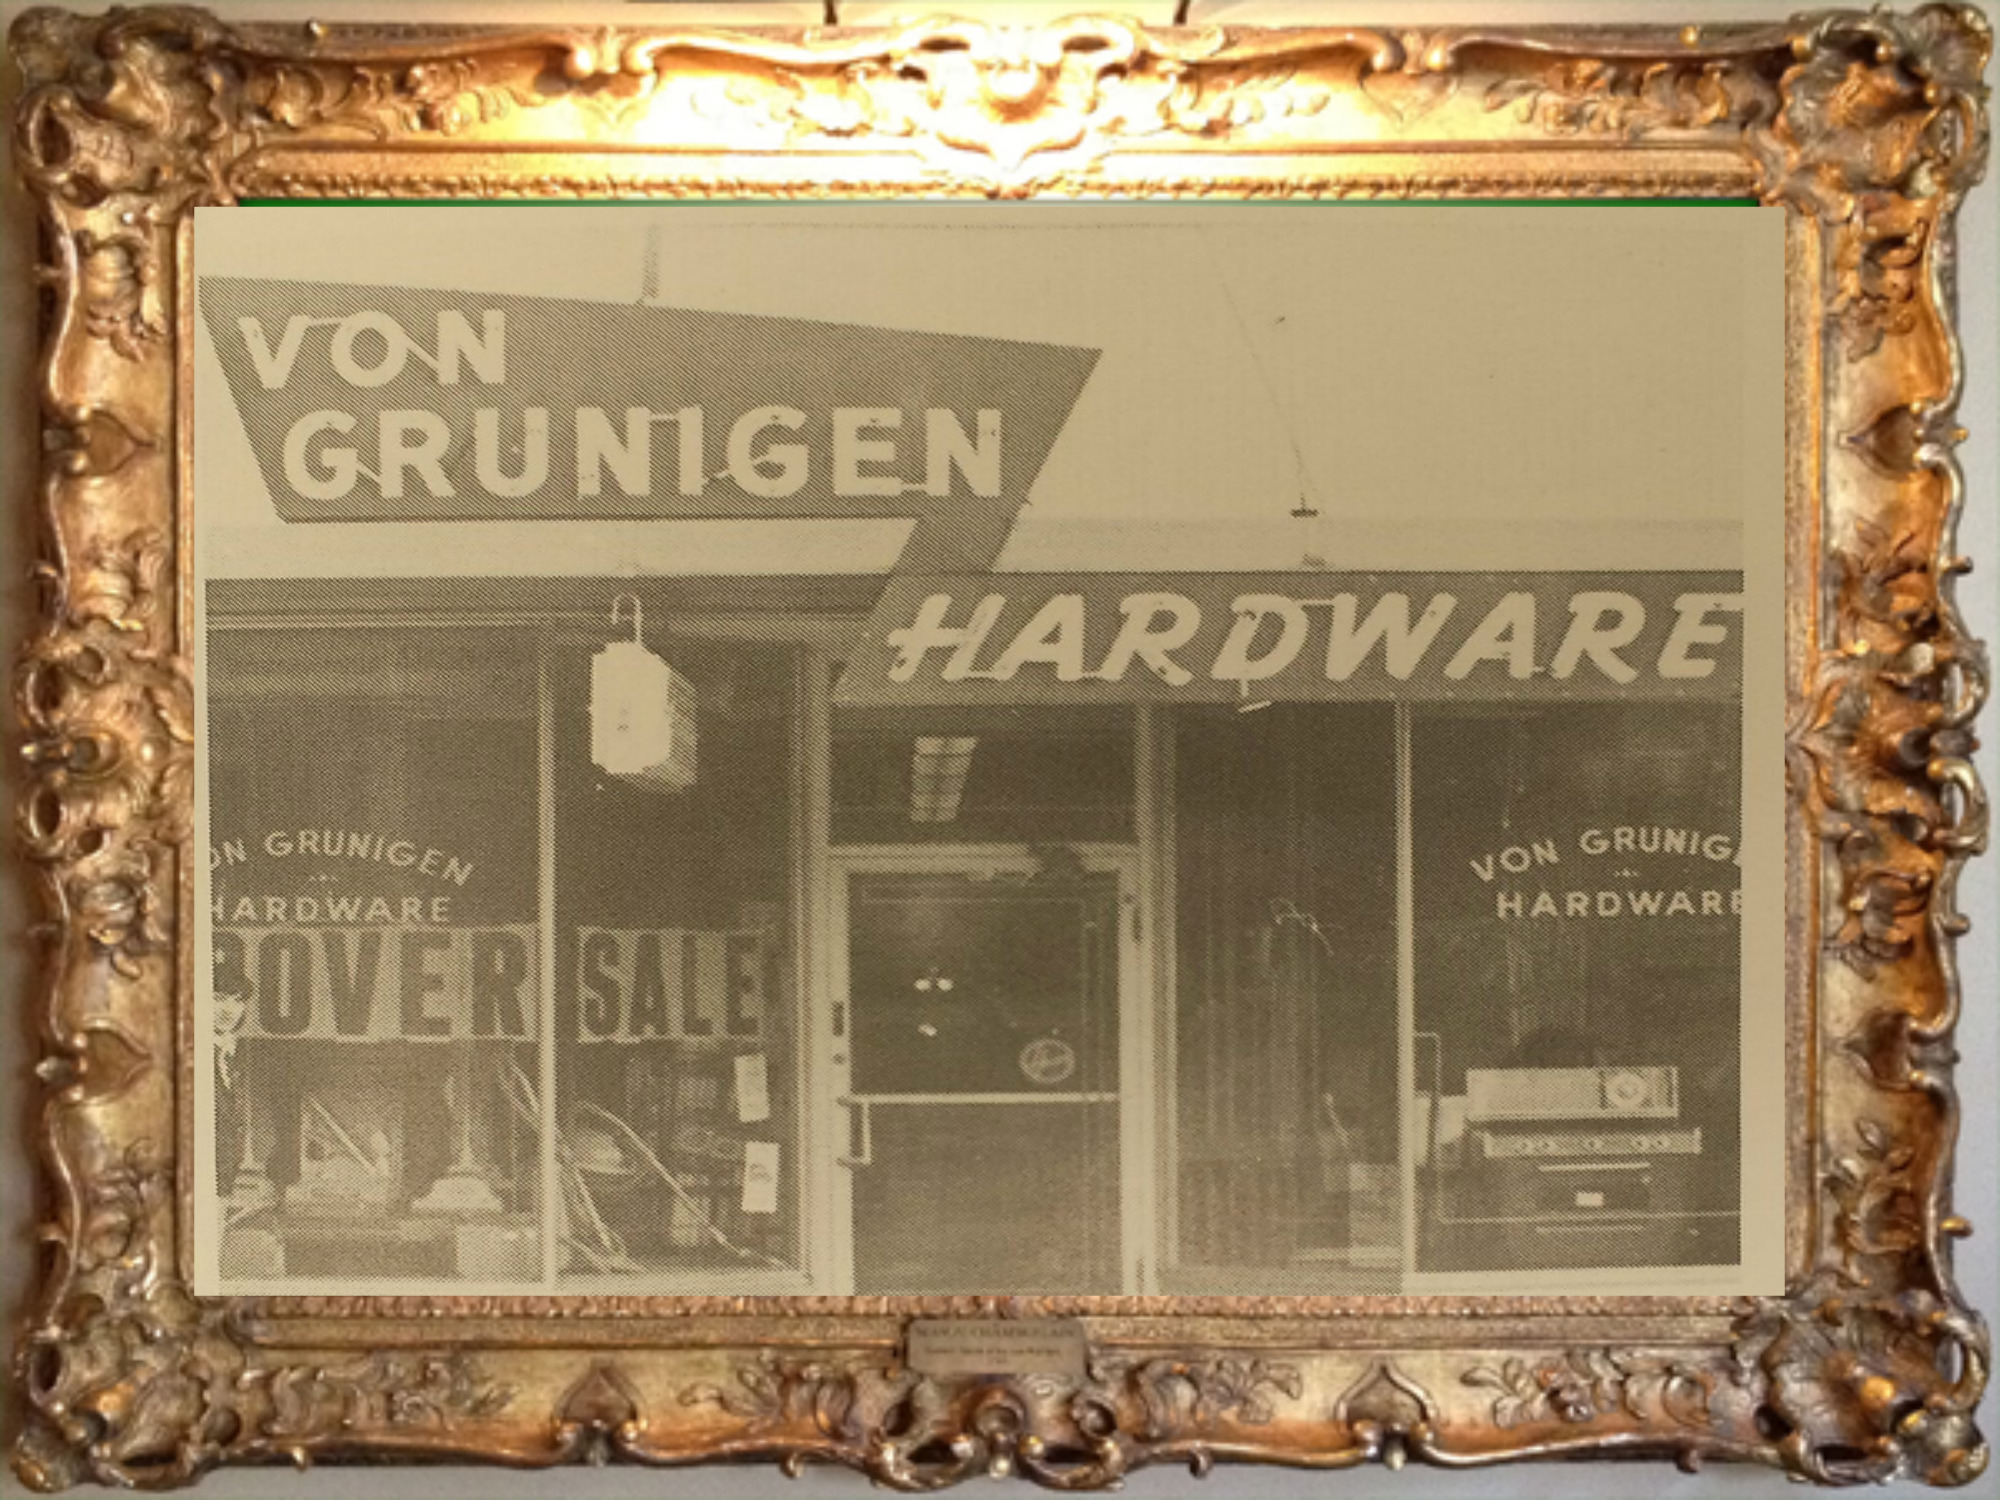 VonGunigen's Hardware (with Bobby Kanatzer) - 5/14/16 - # 74